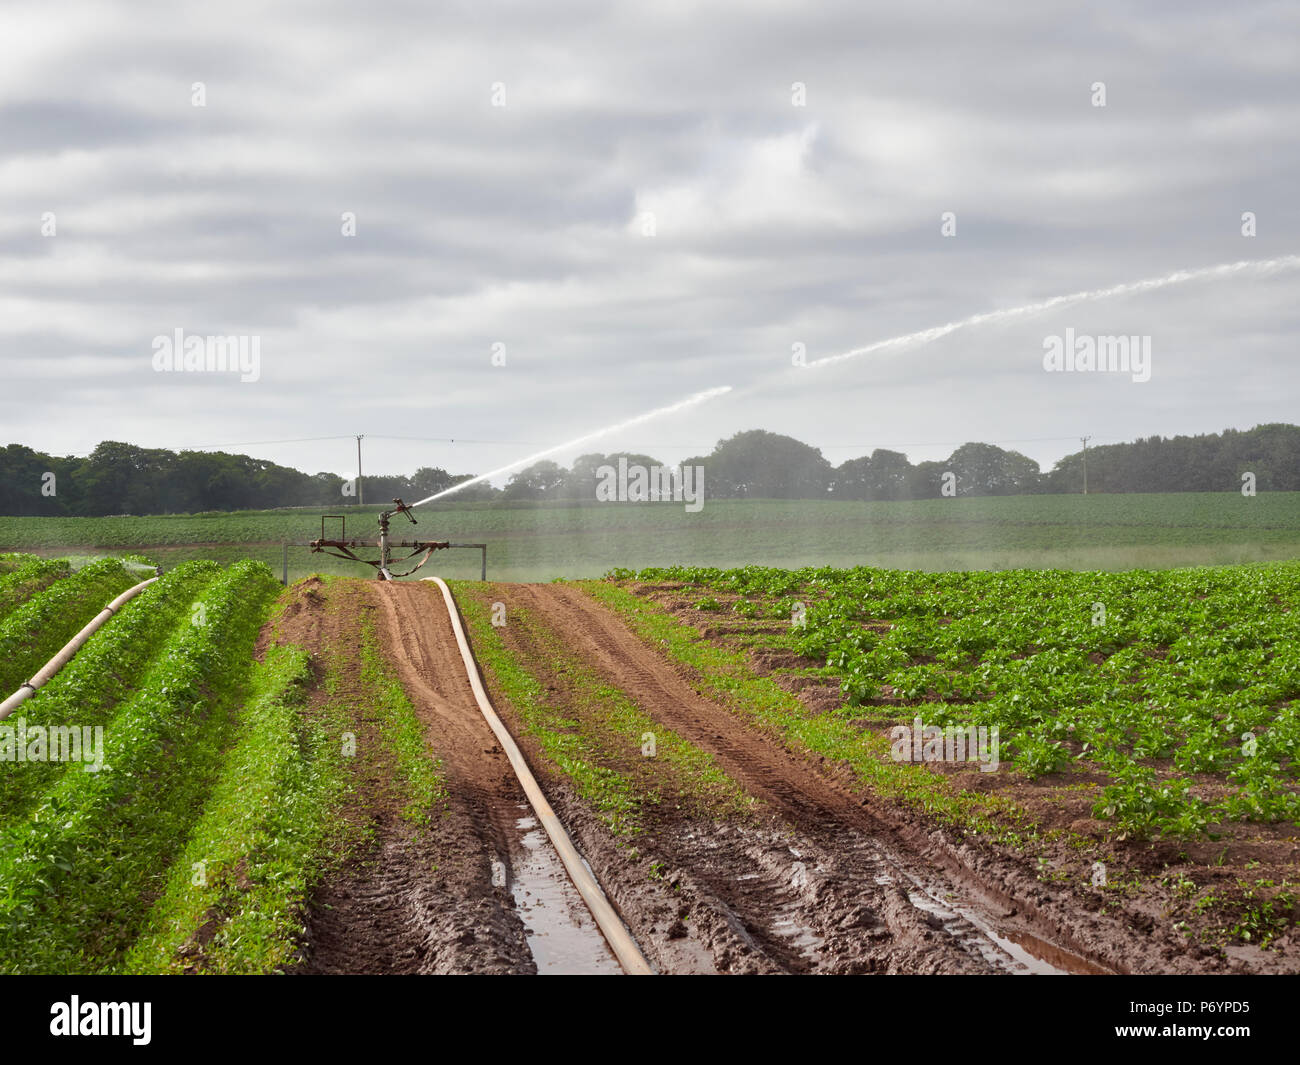 Ein Wrights Rainmaker landwirtschaftlichen Wasserwerfer schießen Wasser aus nach rechts über die Furchen gepflanzt Kartoffelpflanzen im Colliston, Angus, Schottland. Stockfoto